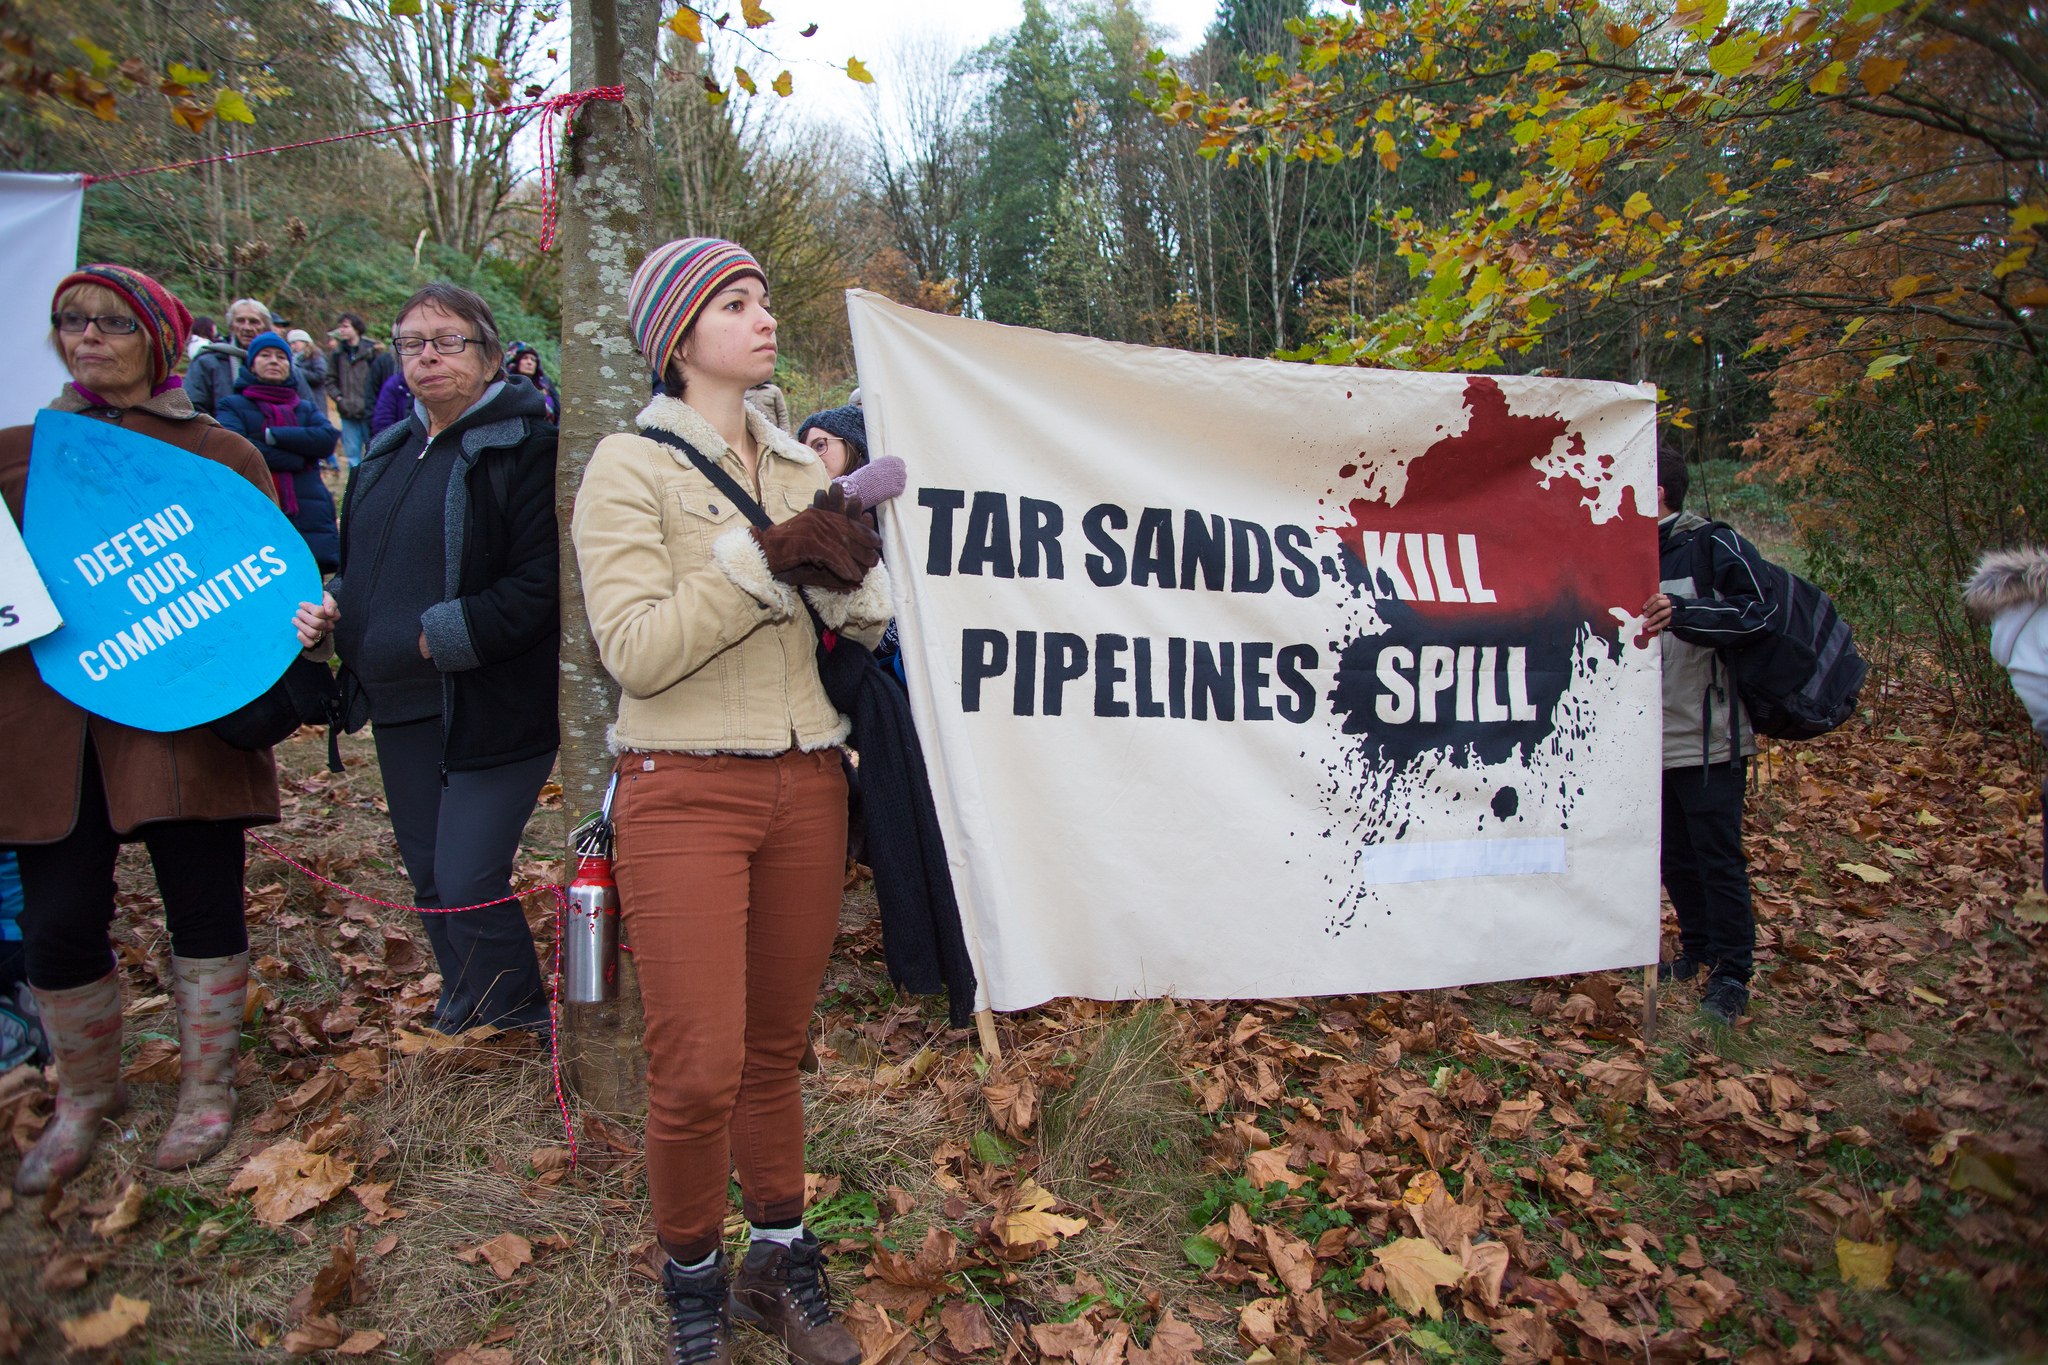 Tar sands kill, pipelines spill